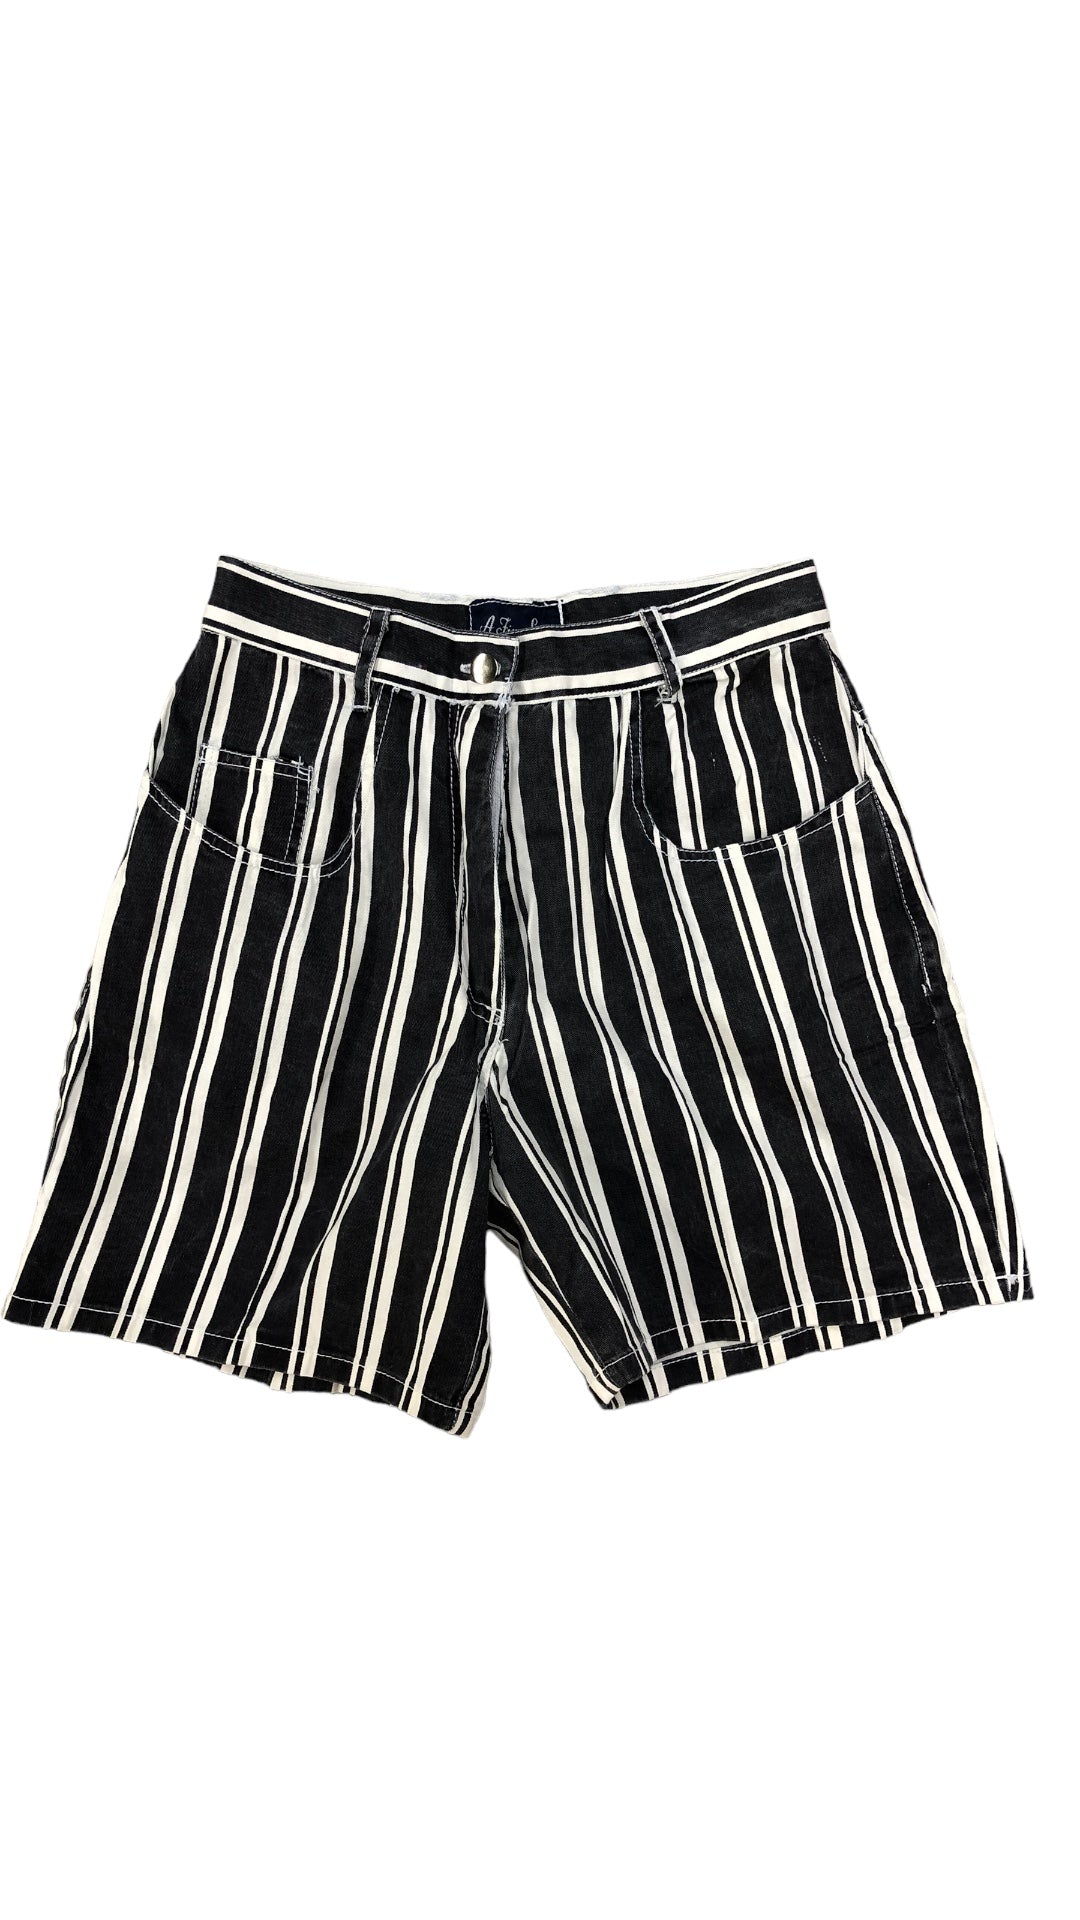 VTG A Fine Line Stripe Shorts Sz 28x6